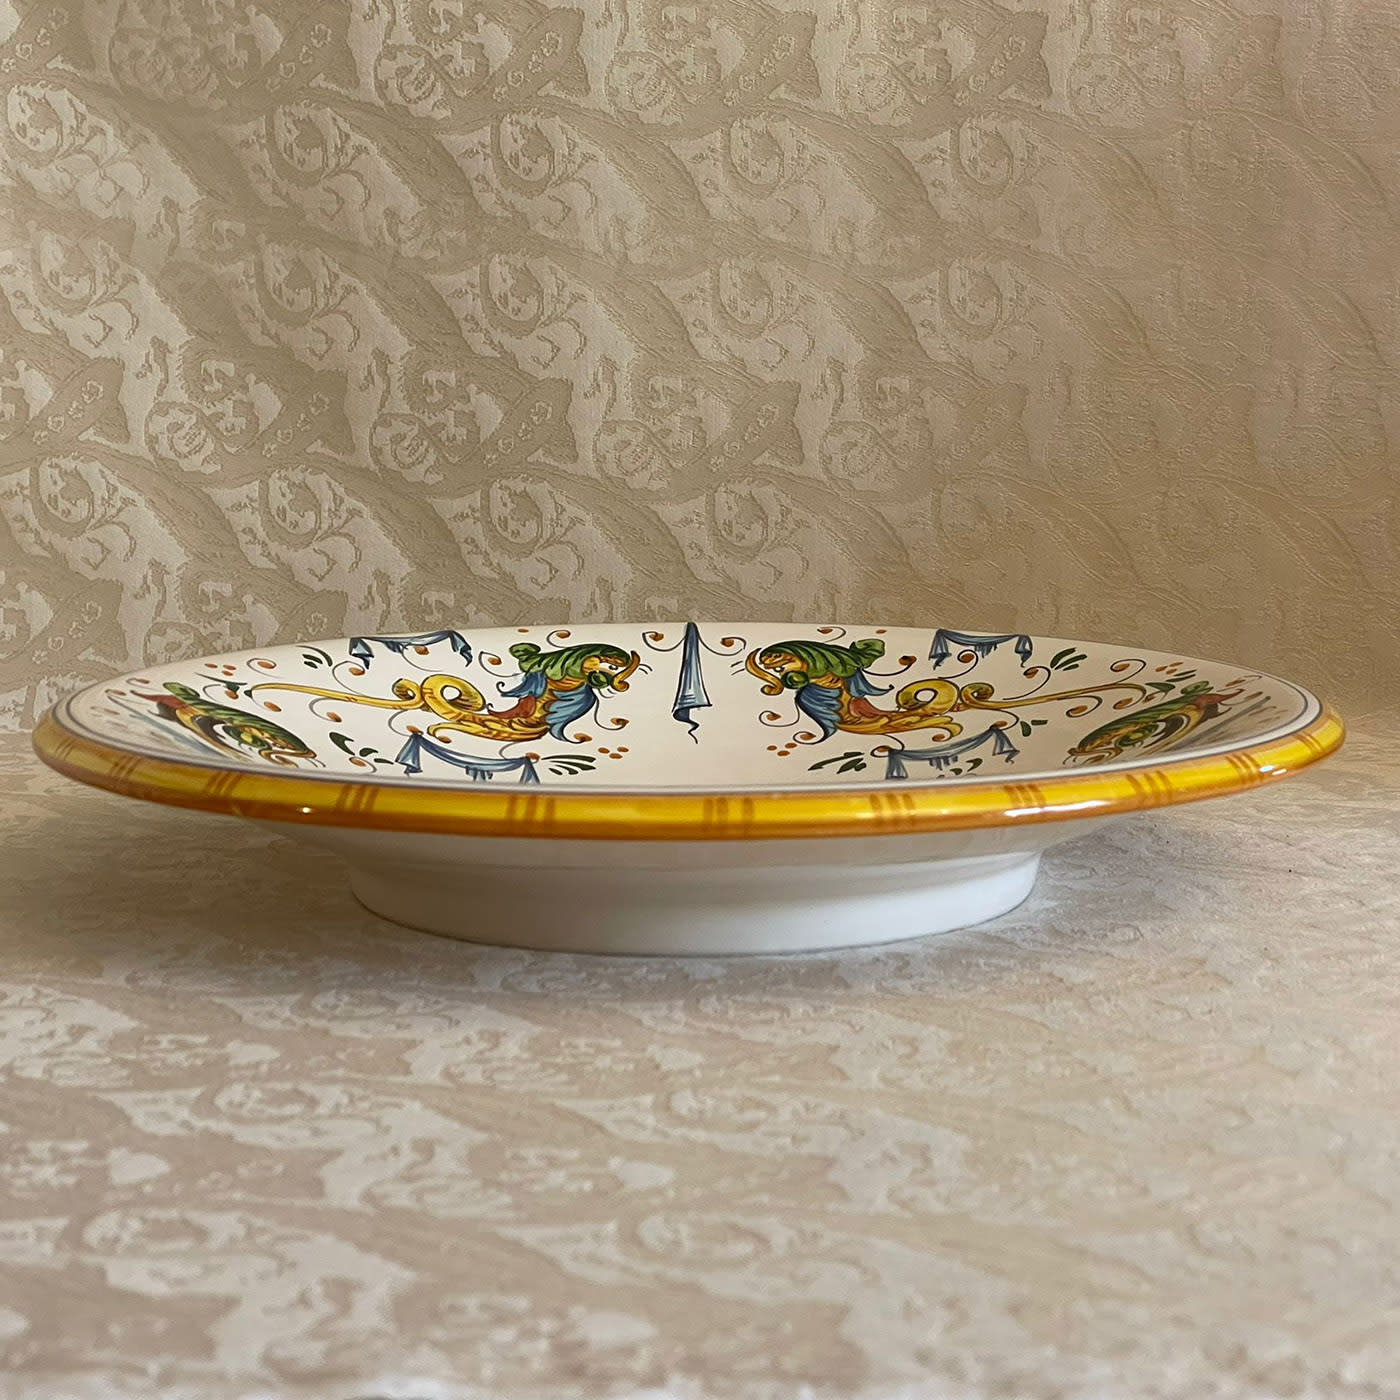 Raphaelesque-style Ceramic Plate - Ceramiche Corsini